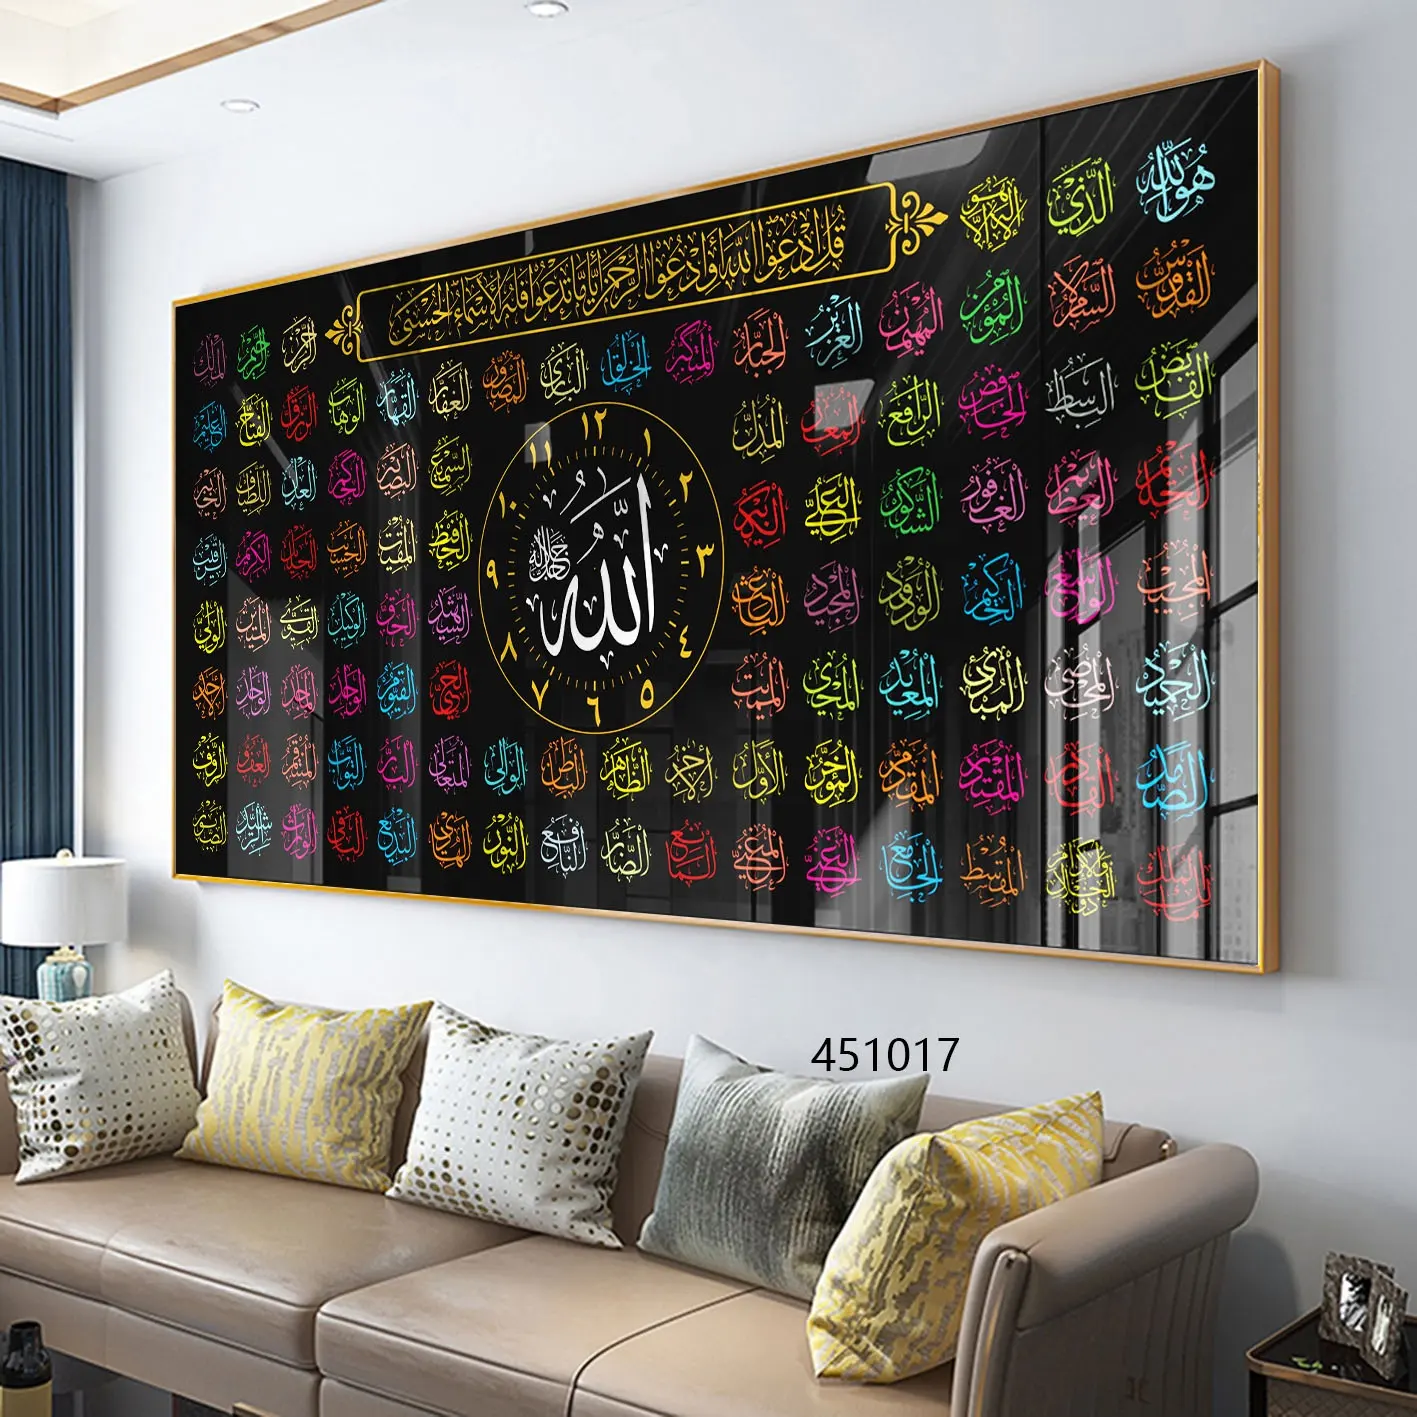 Décoration de maison islamique, calligraphie arabe imprimée, peinture murale en porcelaine de cristal islamique, Art